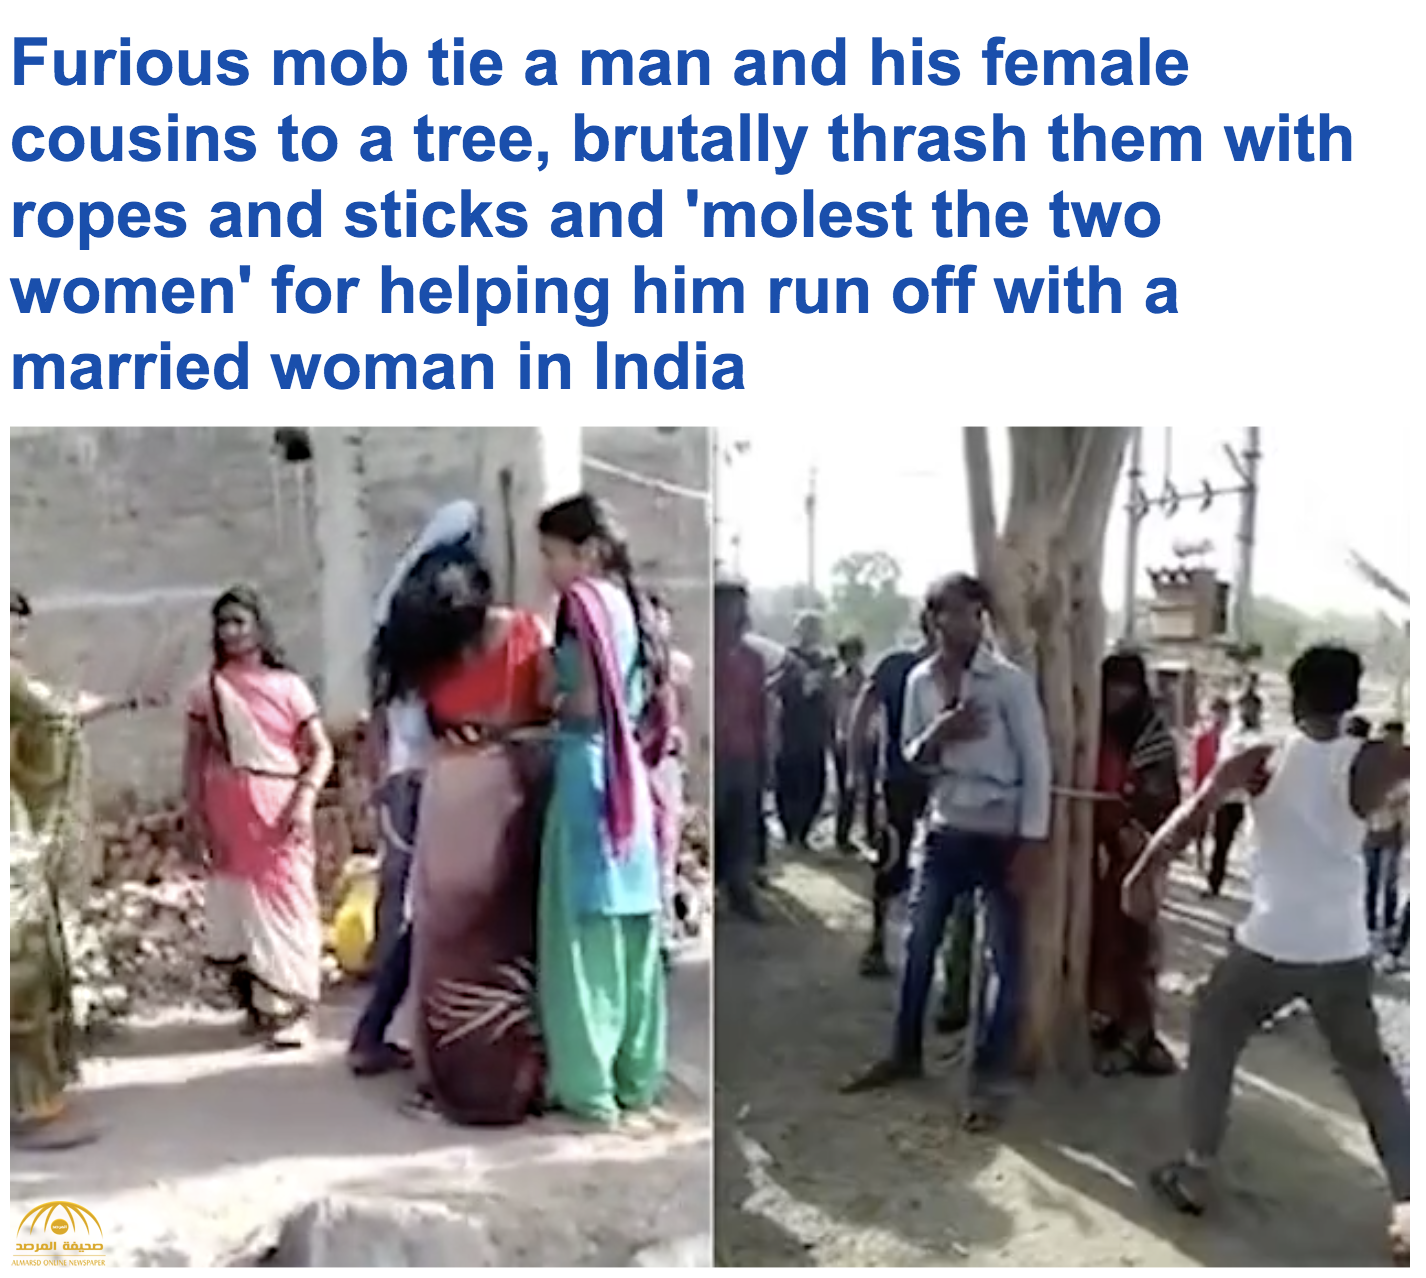 شاهد.. ربط امرأة هندية متزوجة  في شجرة مع عشيقها وجلدهم بـ”الحبال والعصي” !